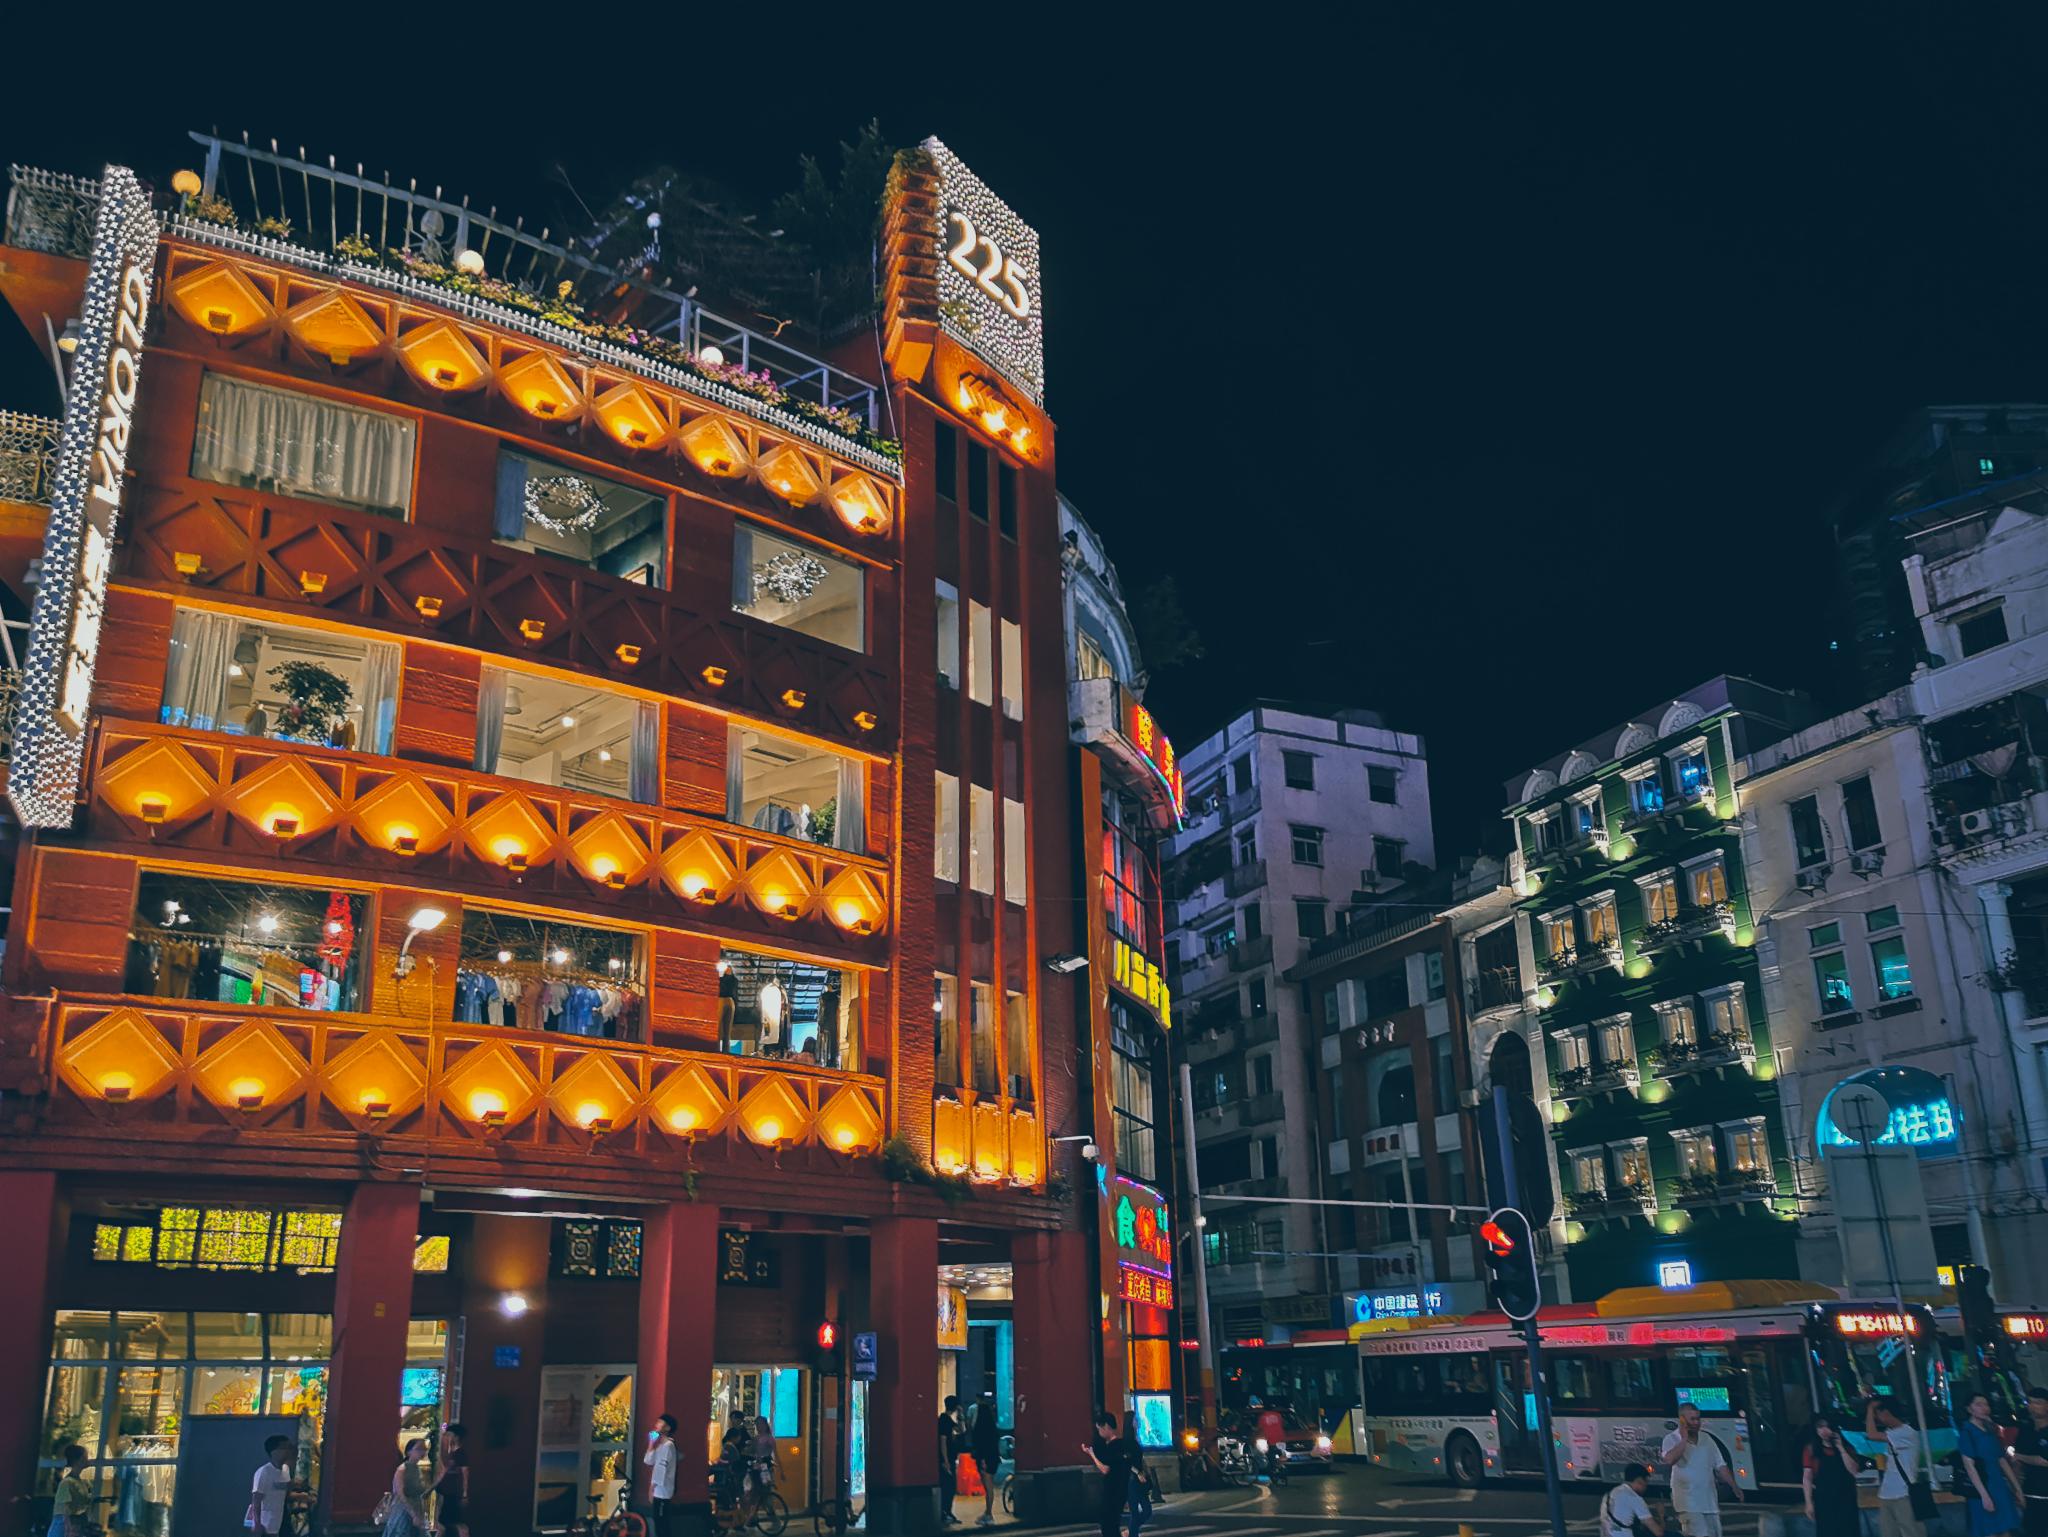 广州北京路小吃街图片